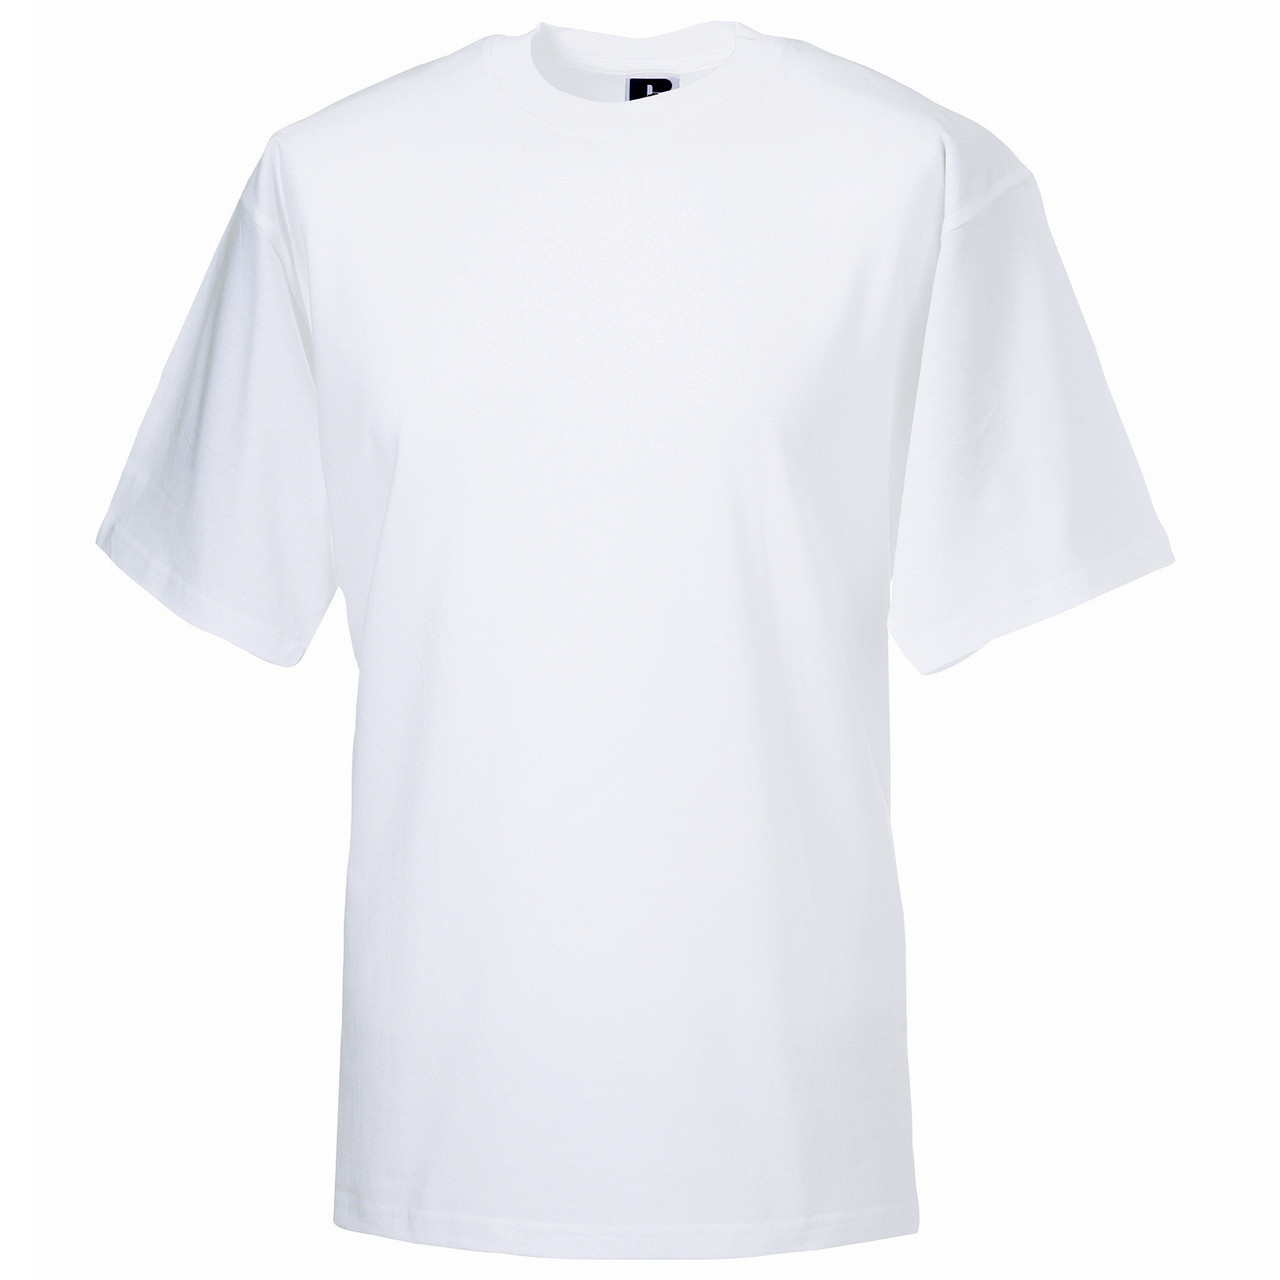 Childrens Plain White T Shirts Plain T Shirt Tops For Children Venzero